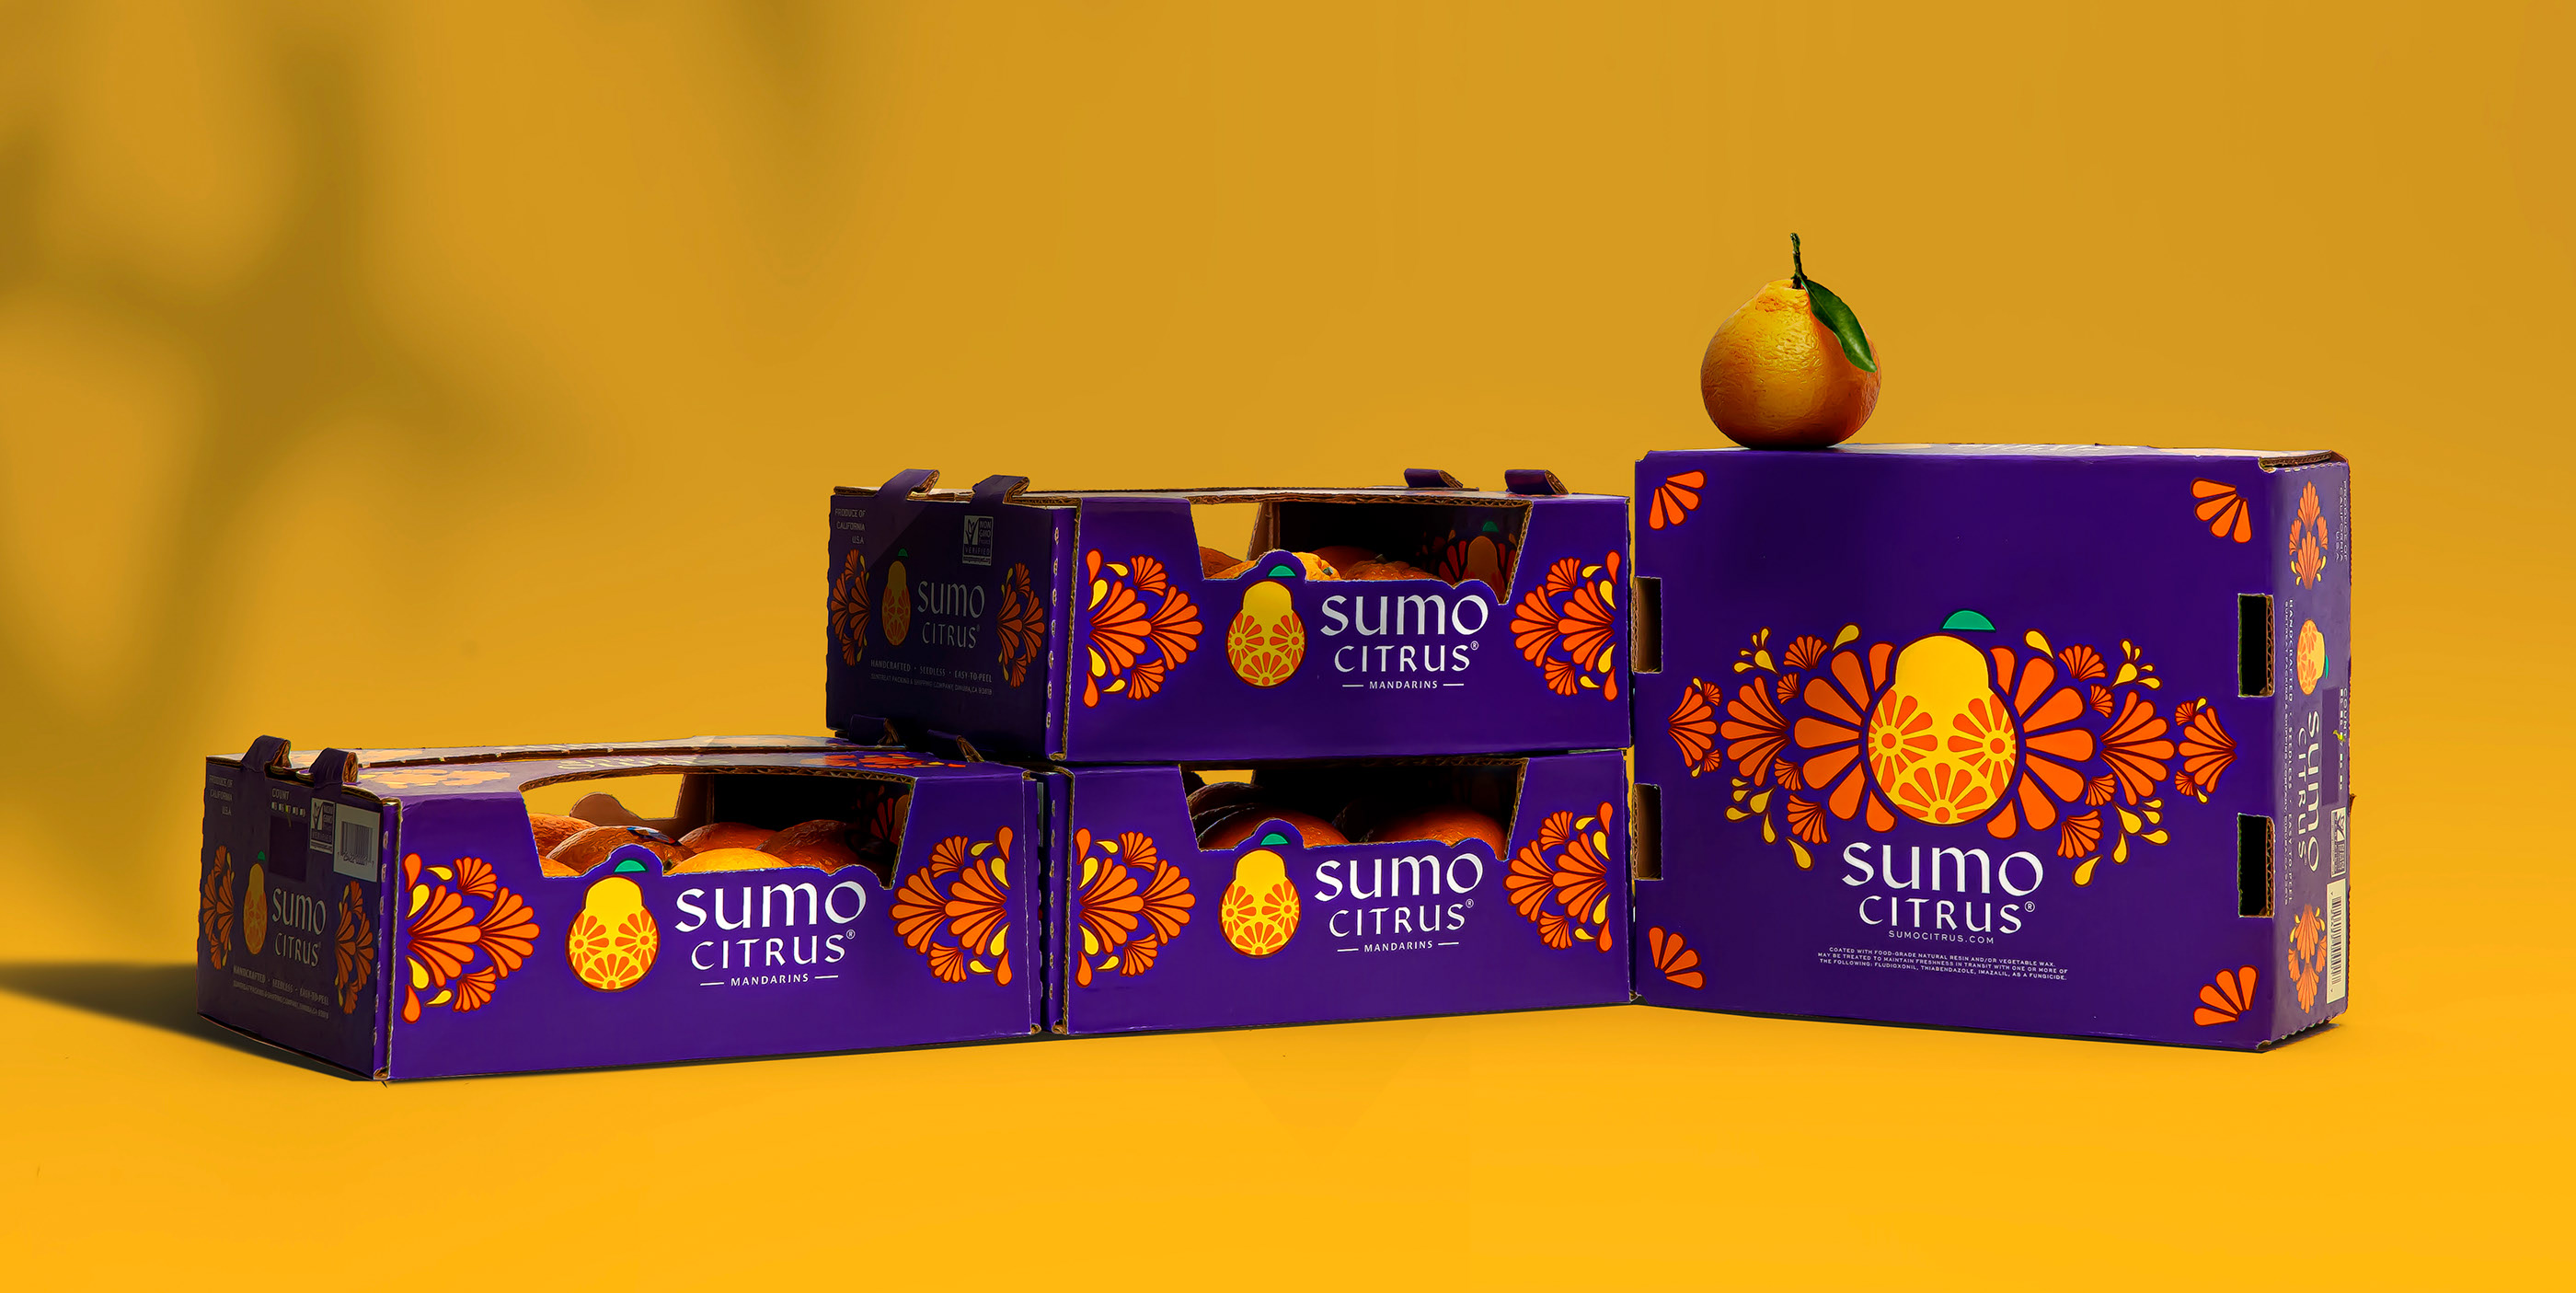 外国柑橘包装设计 柑橘包装设计哪家好 柑橘包装设计公司 第8张